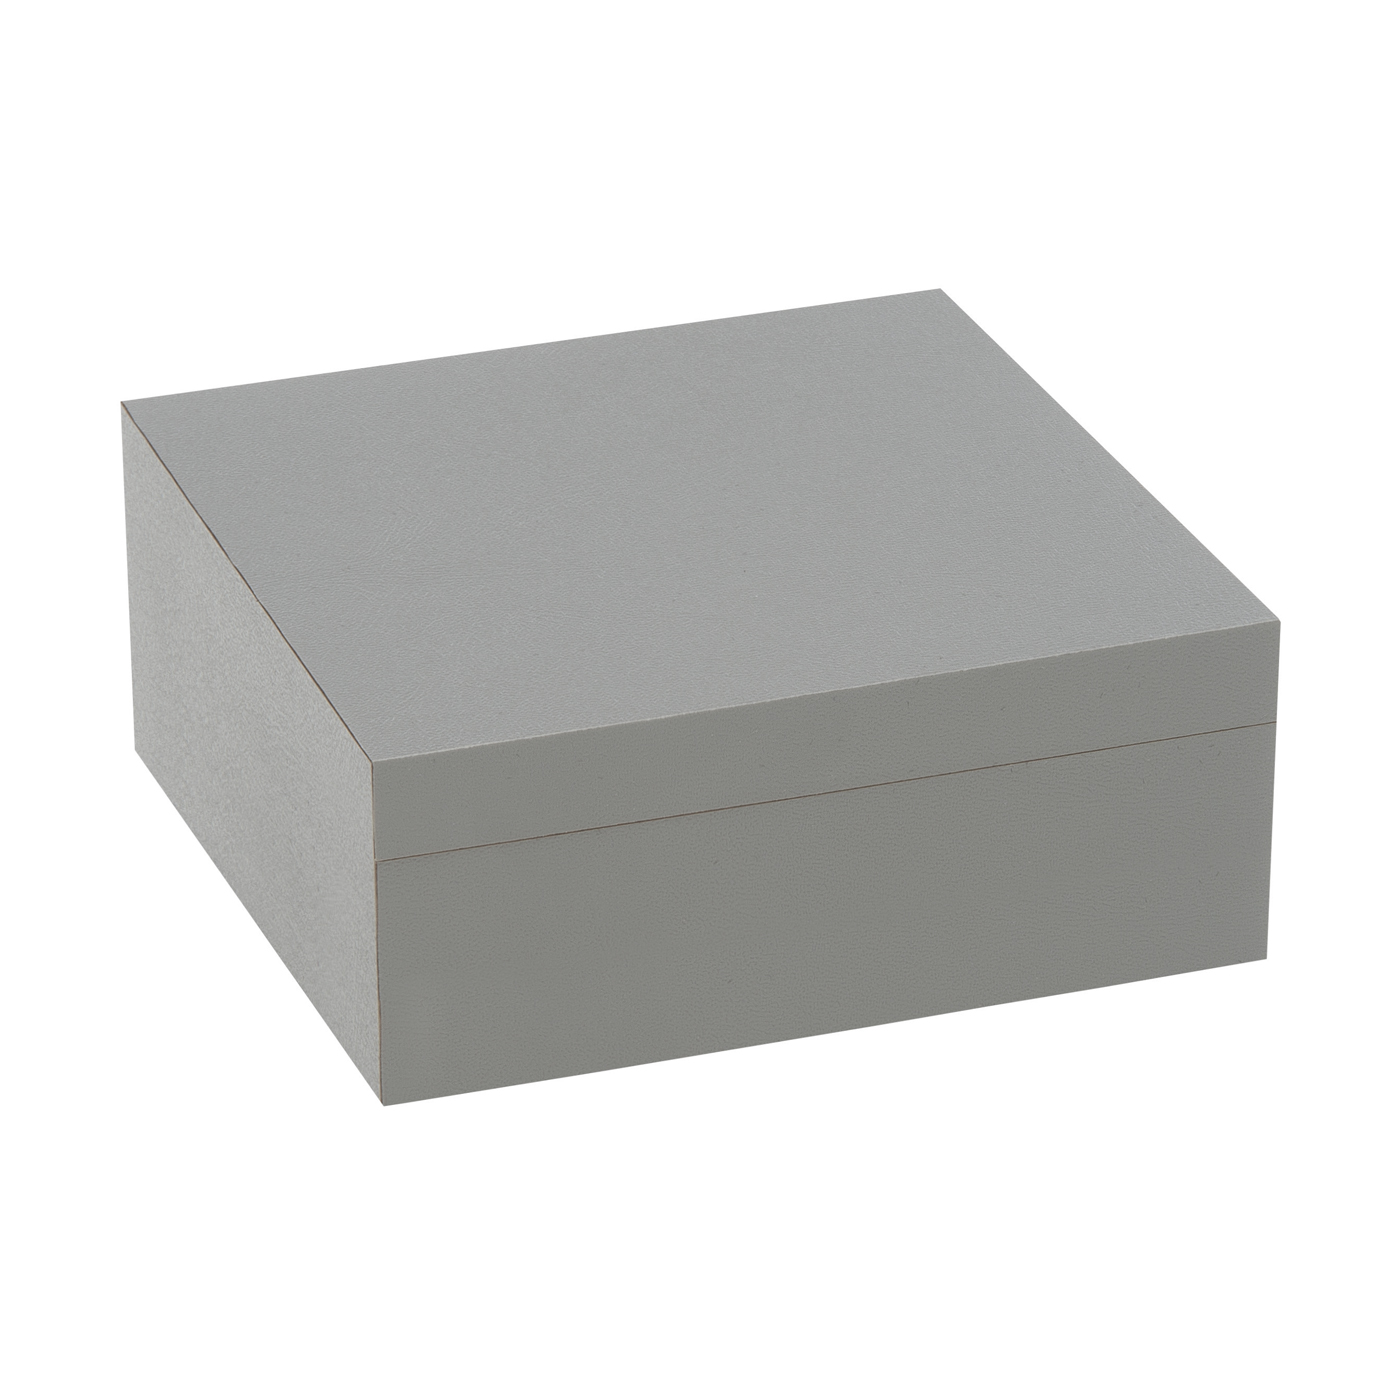 PICA-Design Schmucketui "Greybox", 170 x 170 x 40 mm - 1 Stück